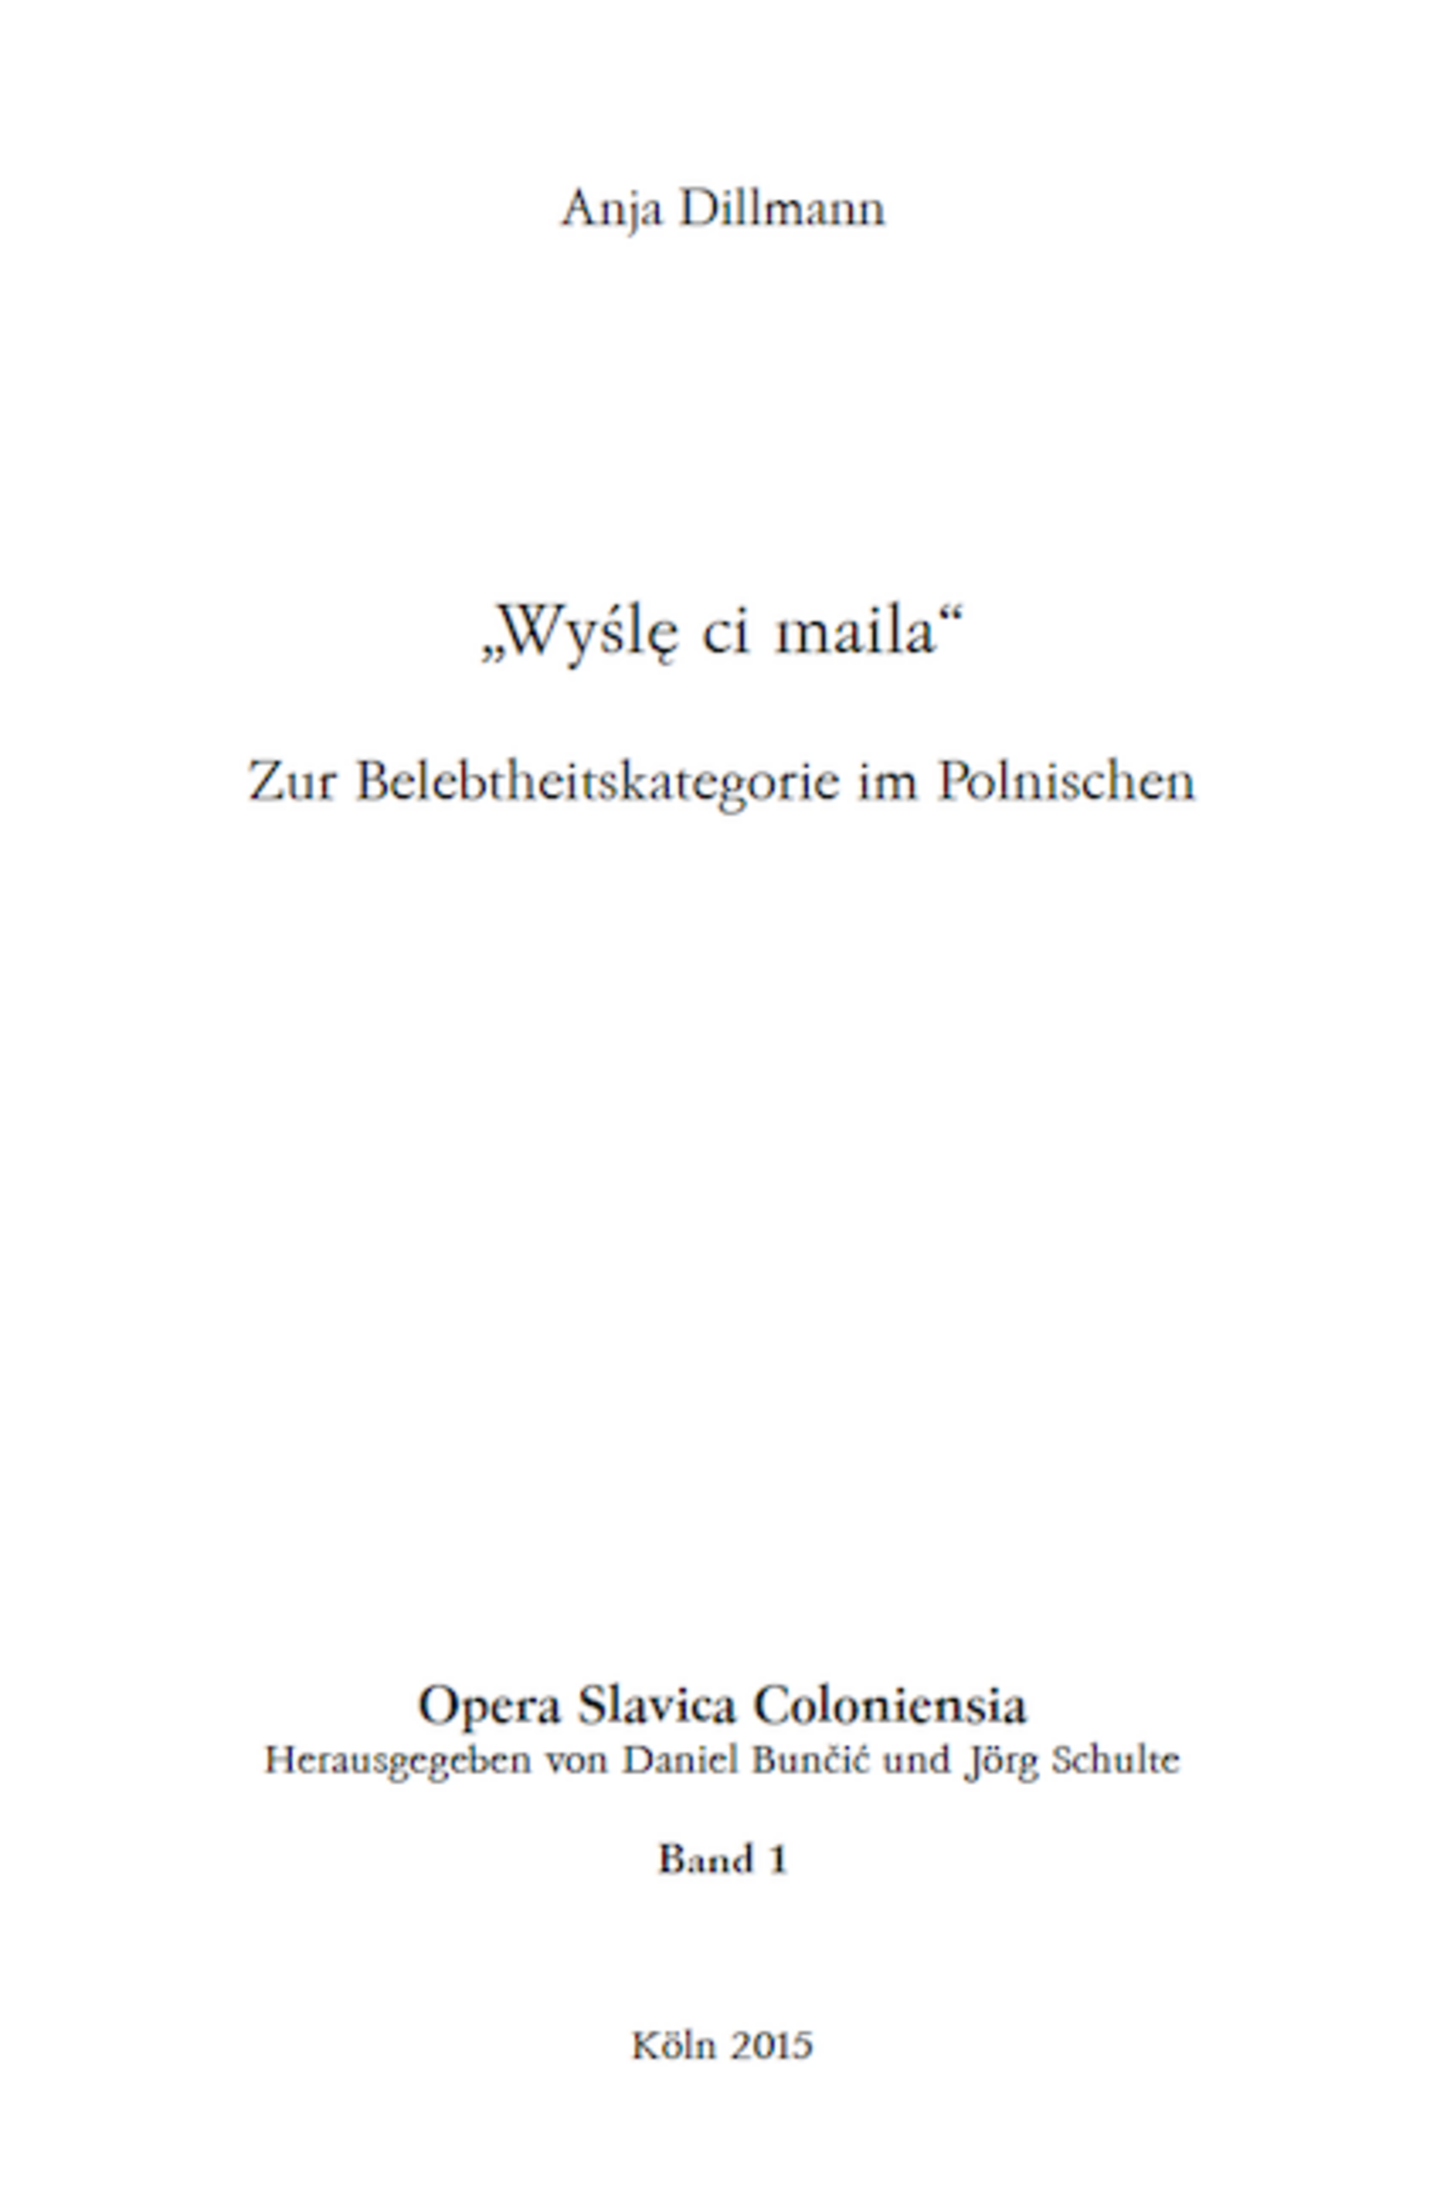 Opera Slavica Coloniensia, Bd. 1: Anja Dillmann (2015) „Wyślę ci maila“: Zur Belebtheitskategorie im Polnischen